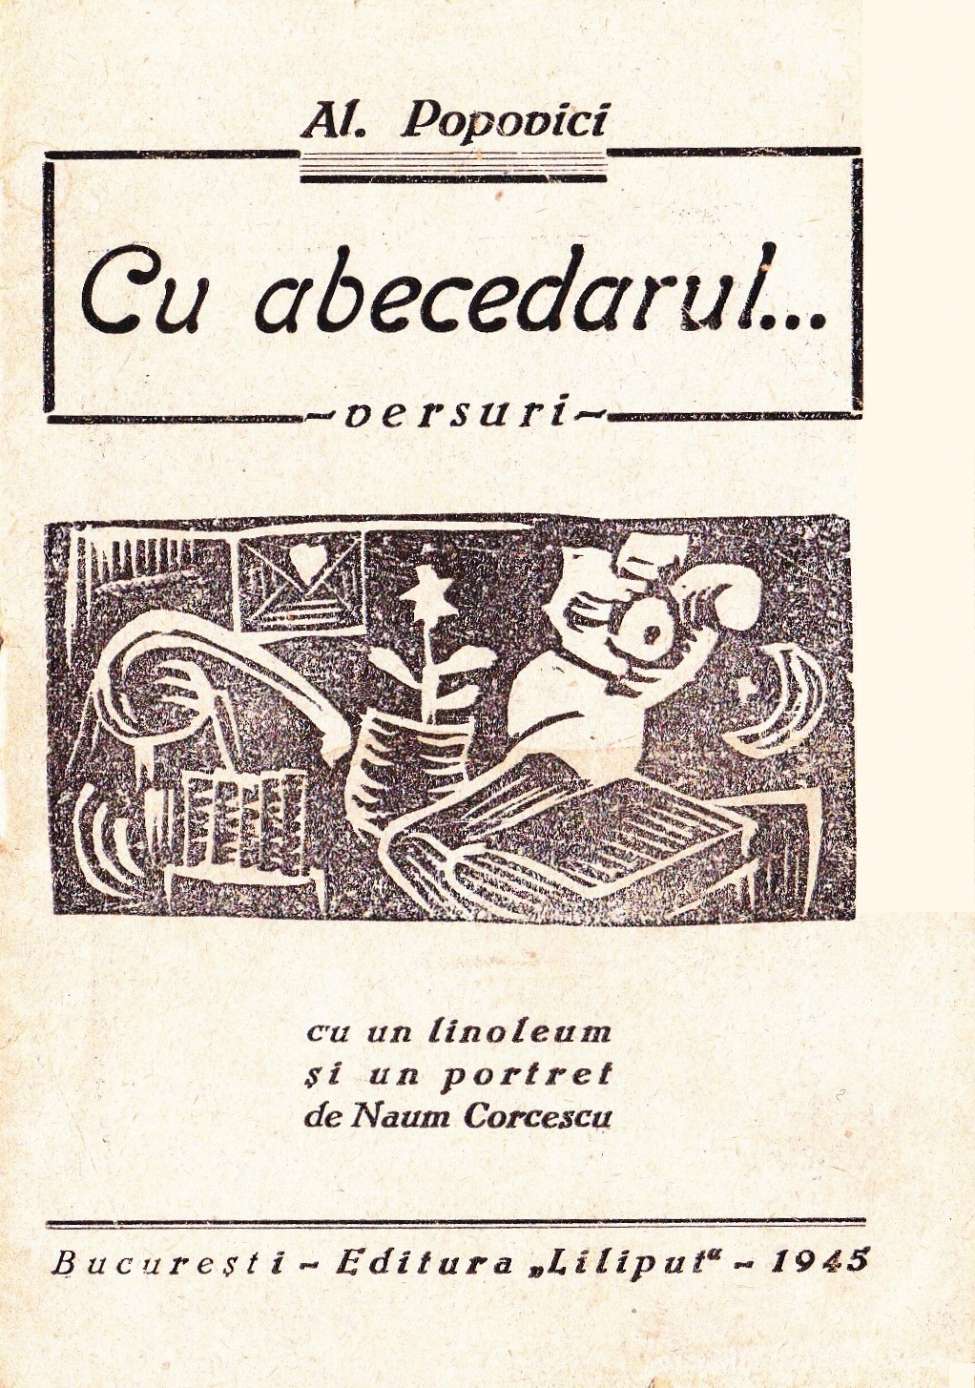 Book Cover For Cu abecedarul